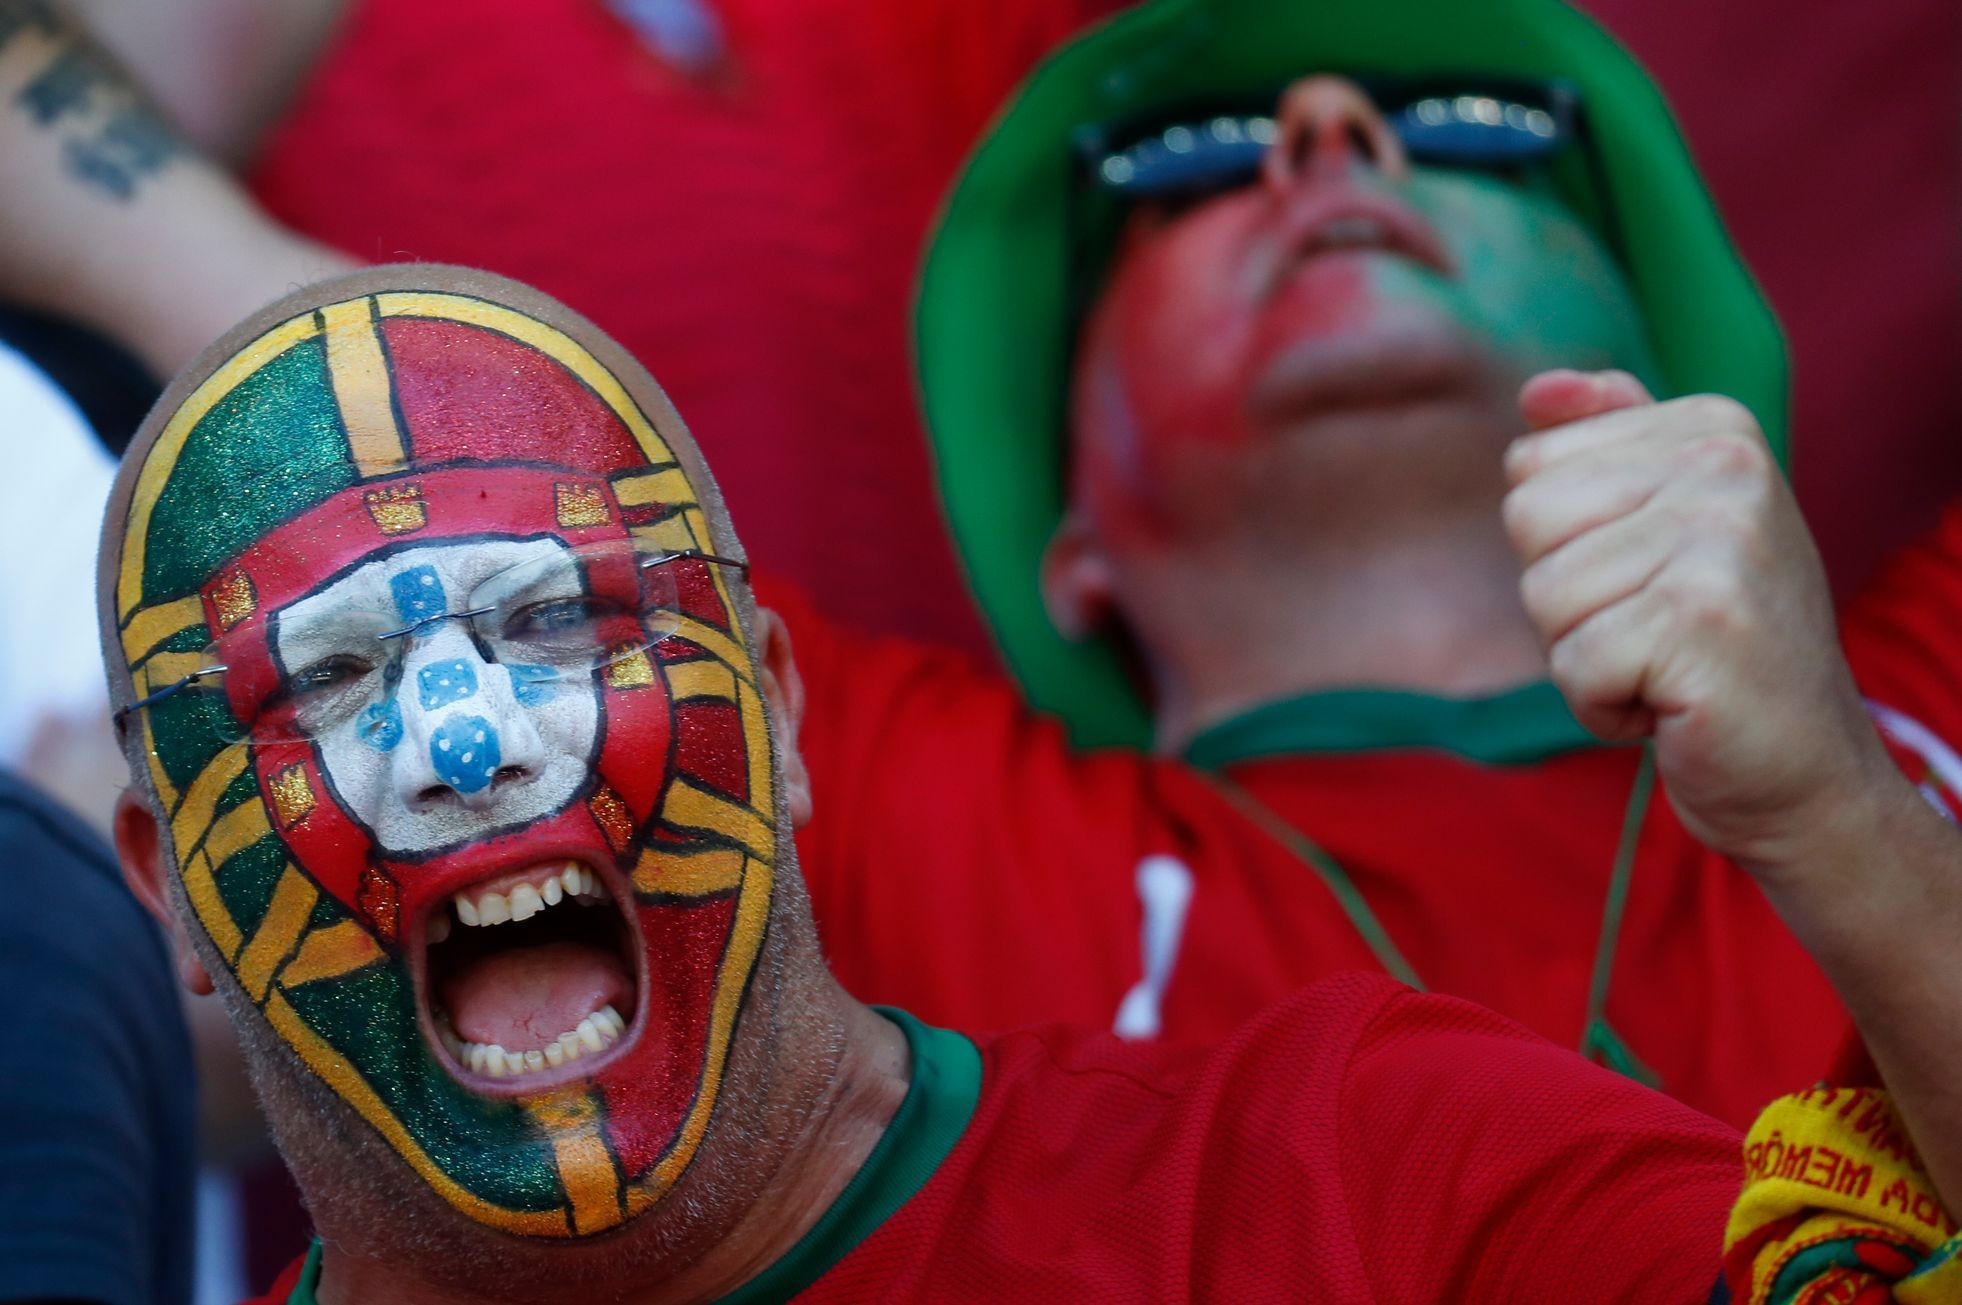 Euro 2016: portugalský fanoušek